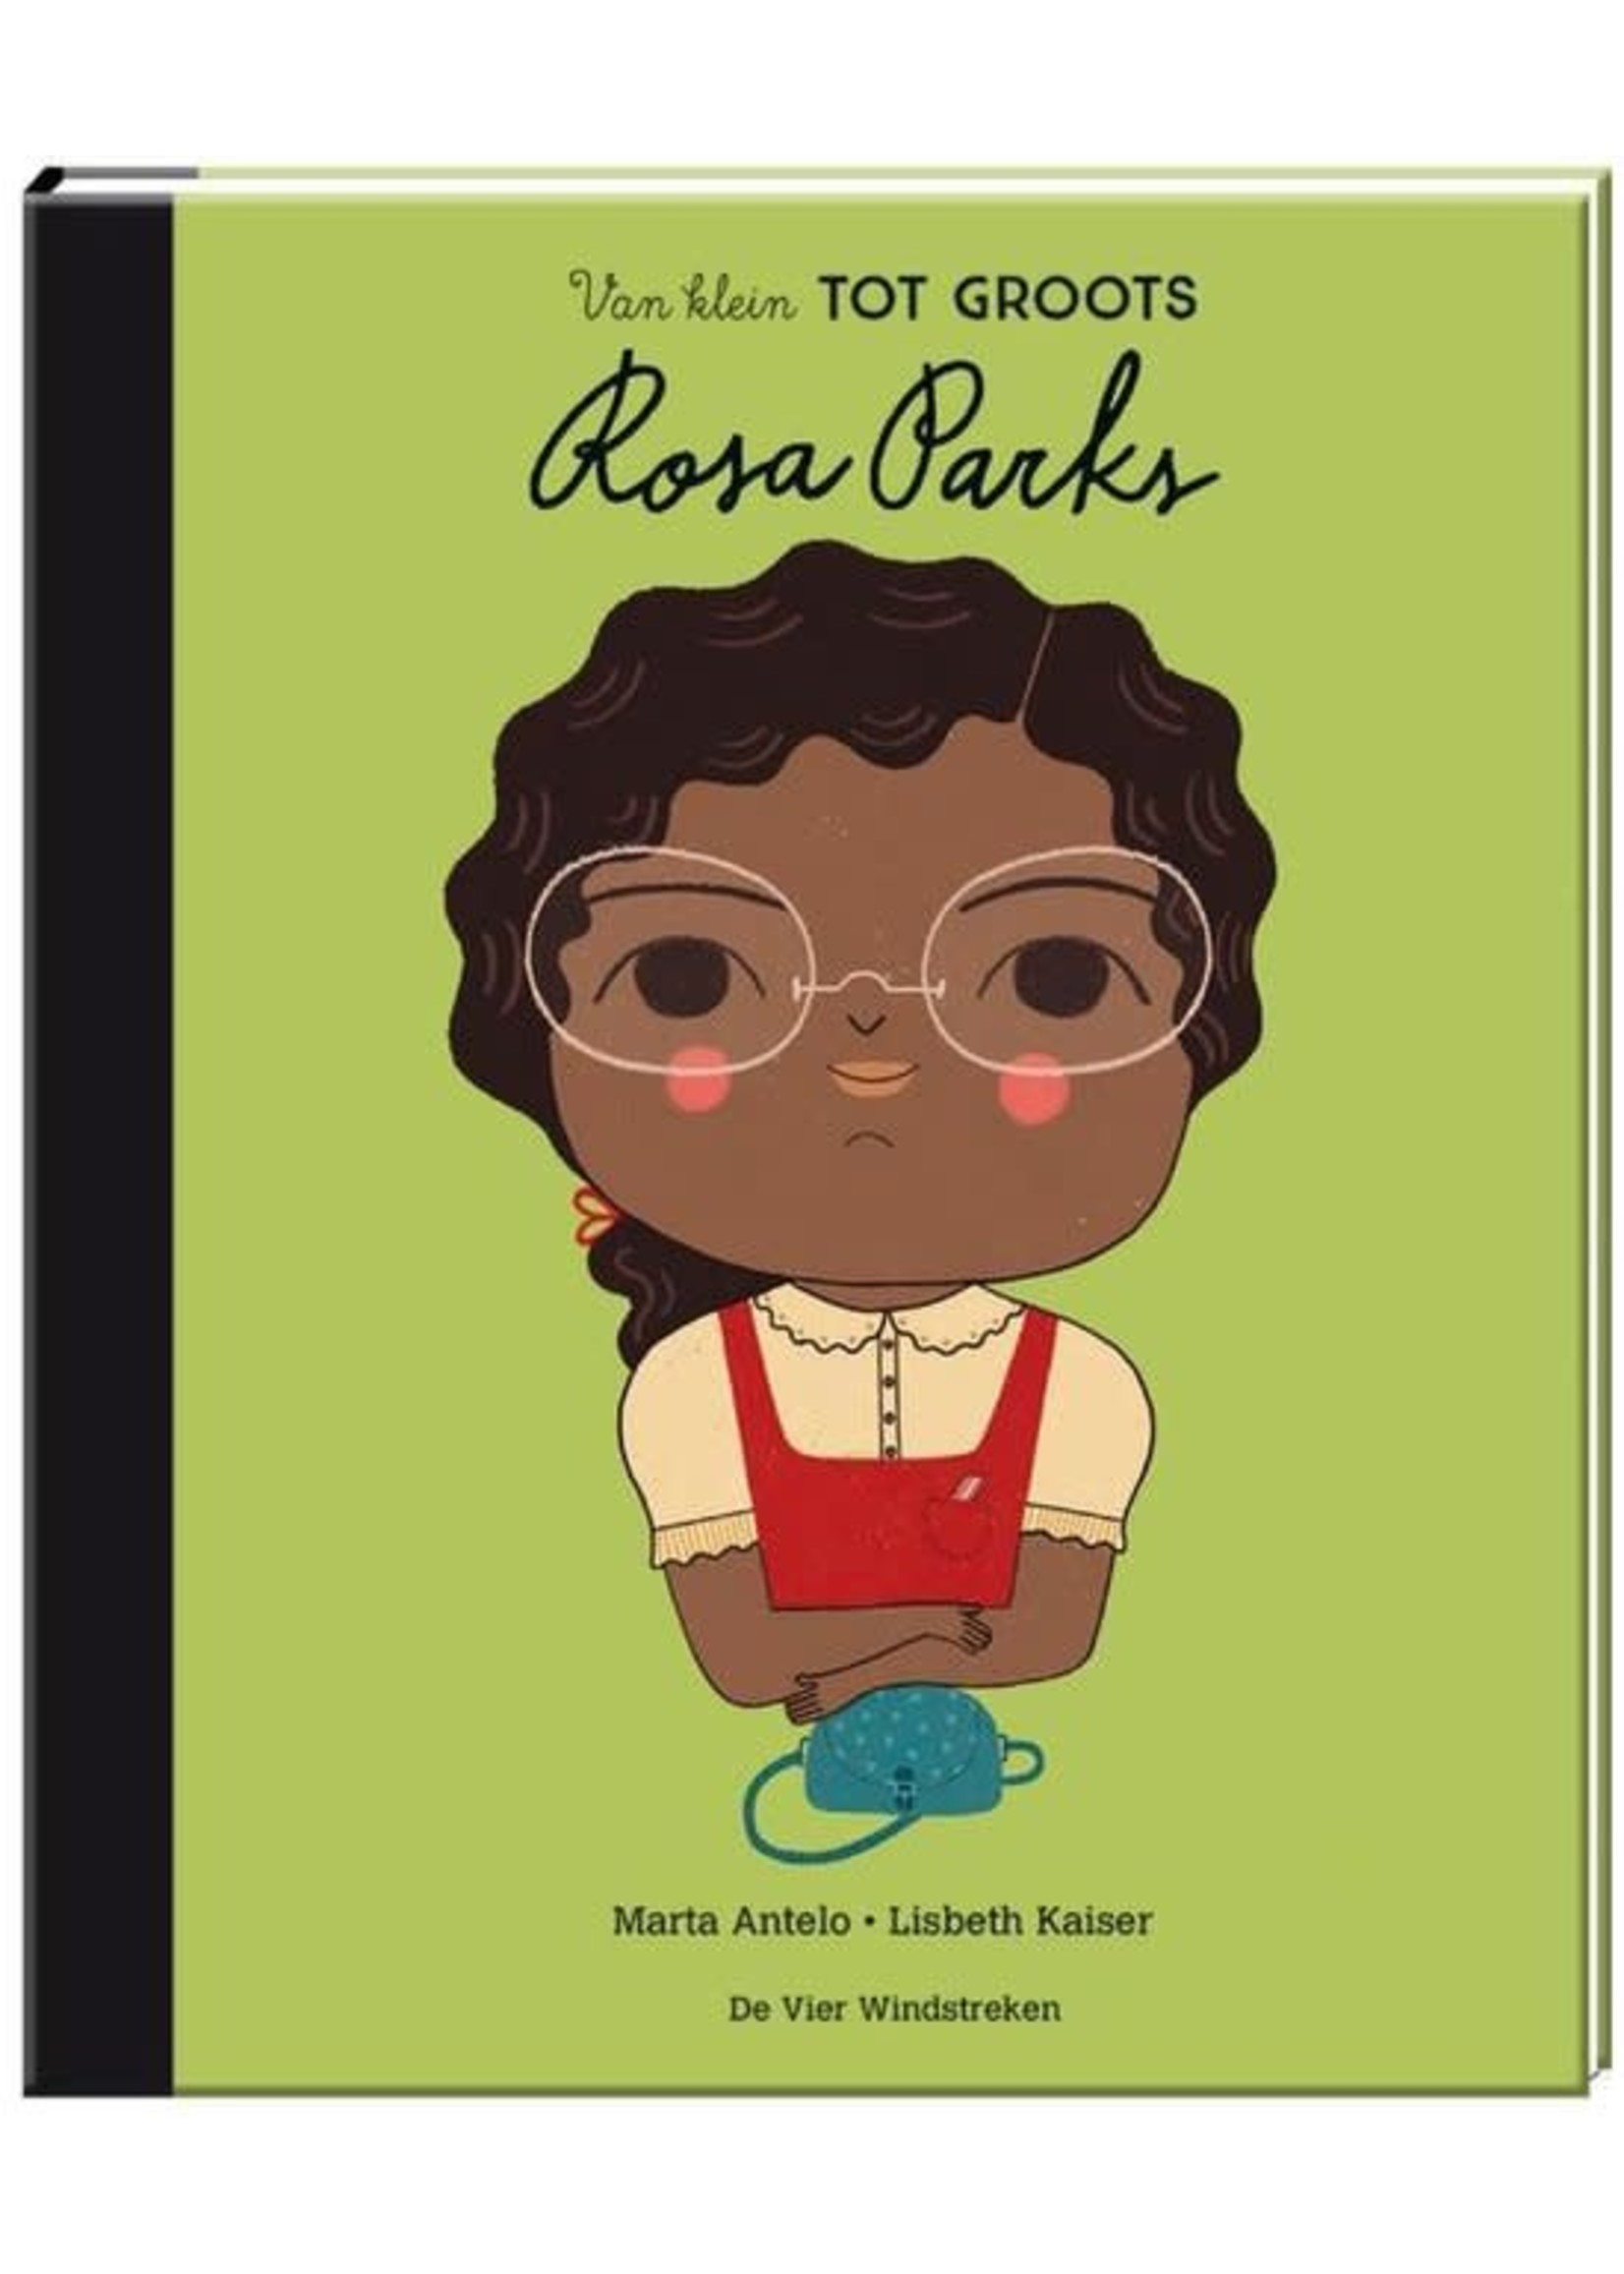 De Vier Windstreken Van klein tot groots: Rosa Parks